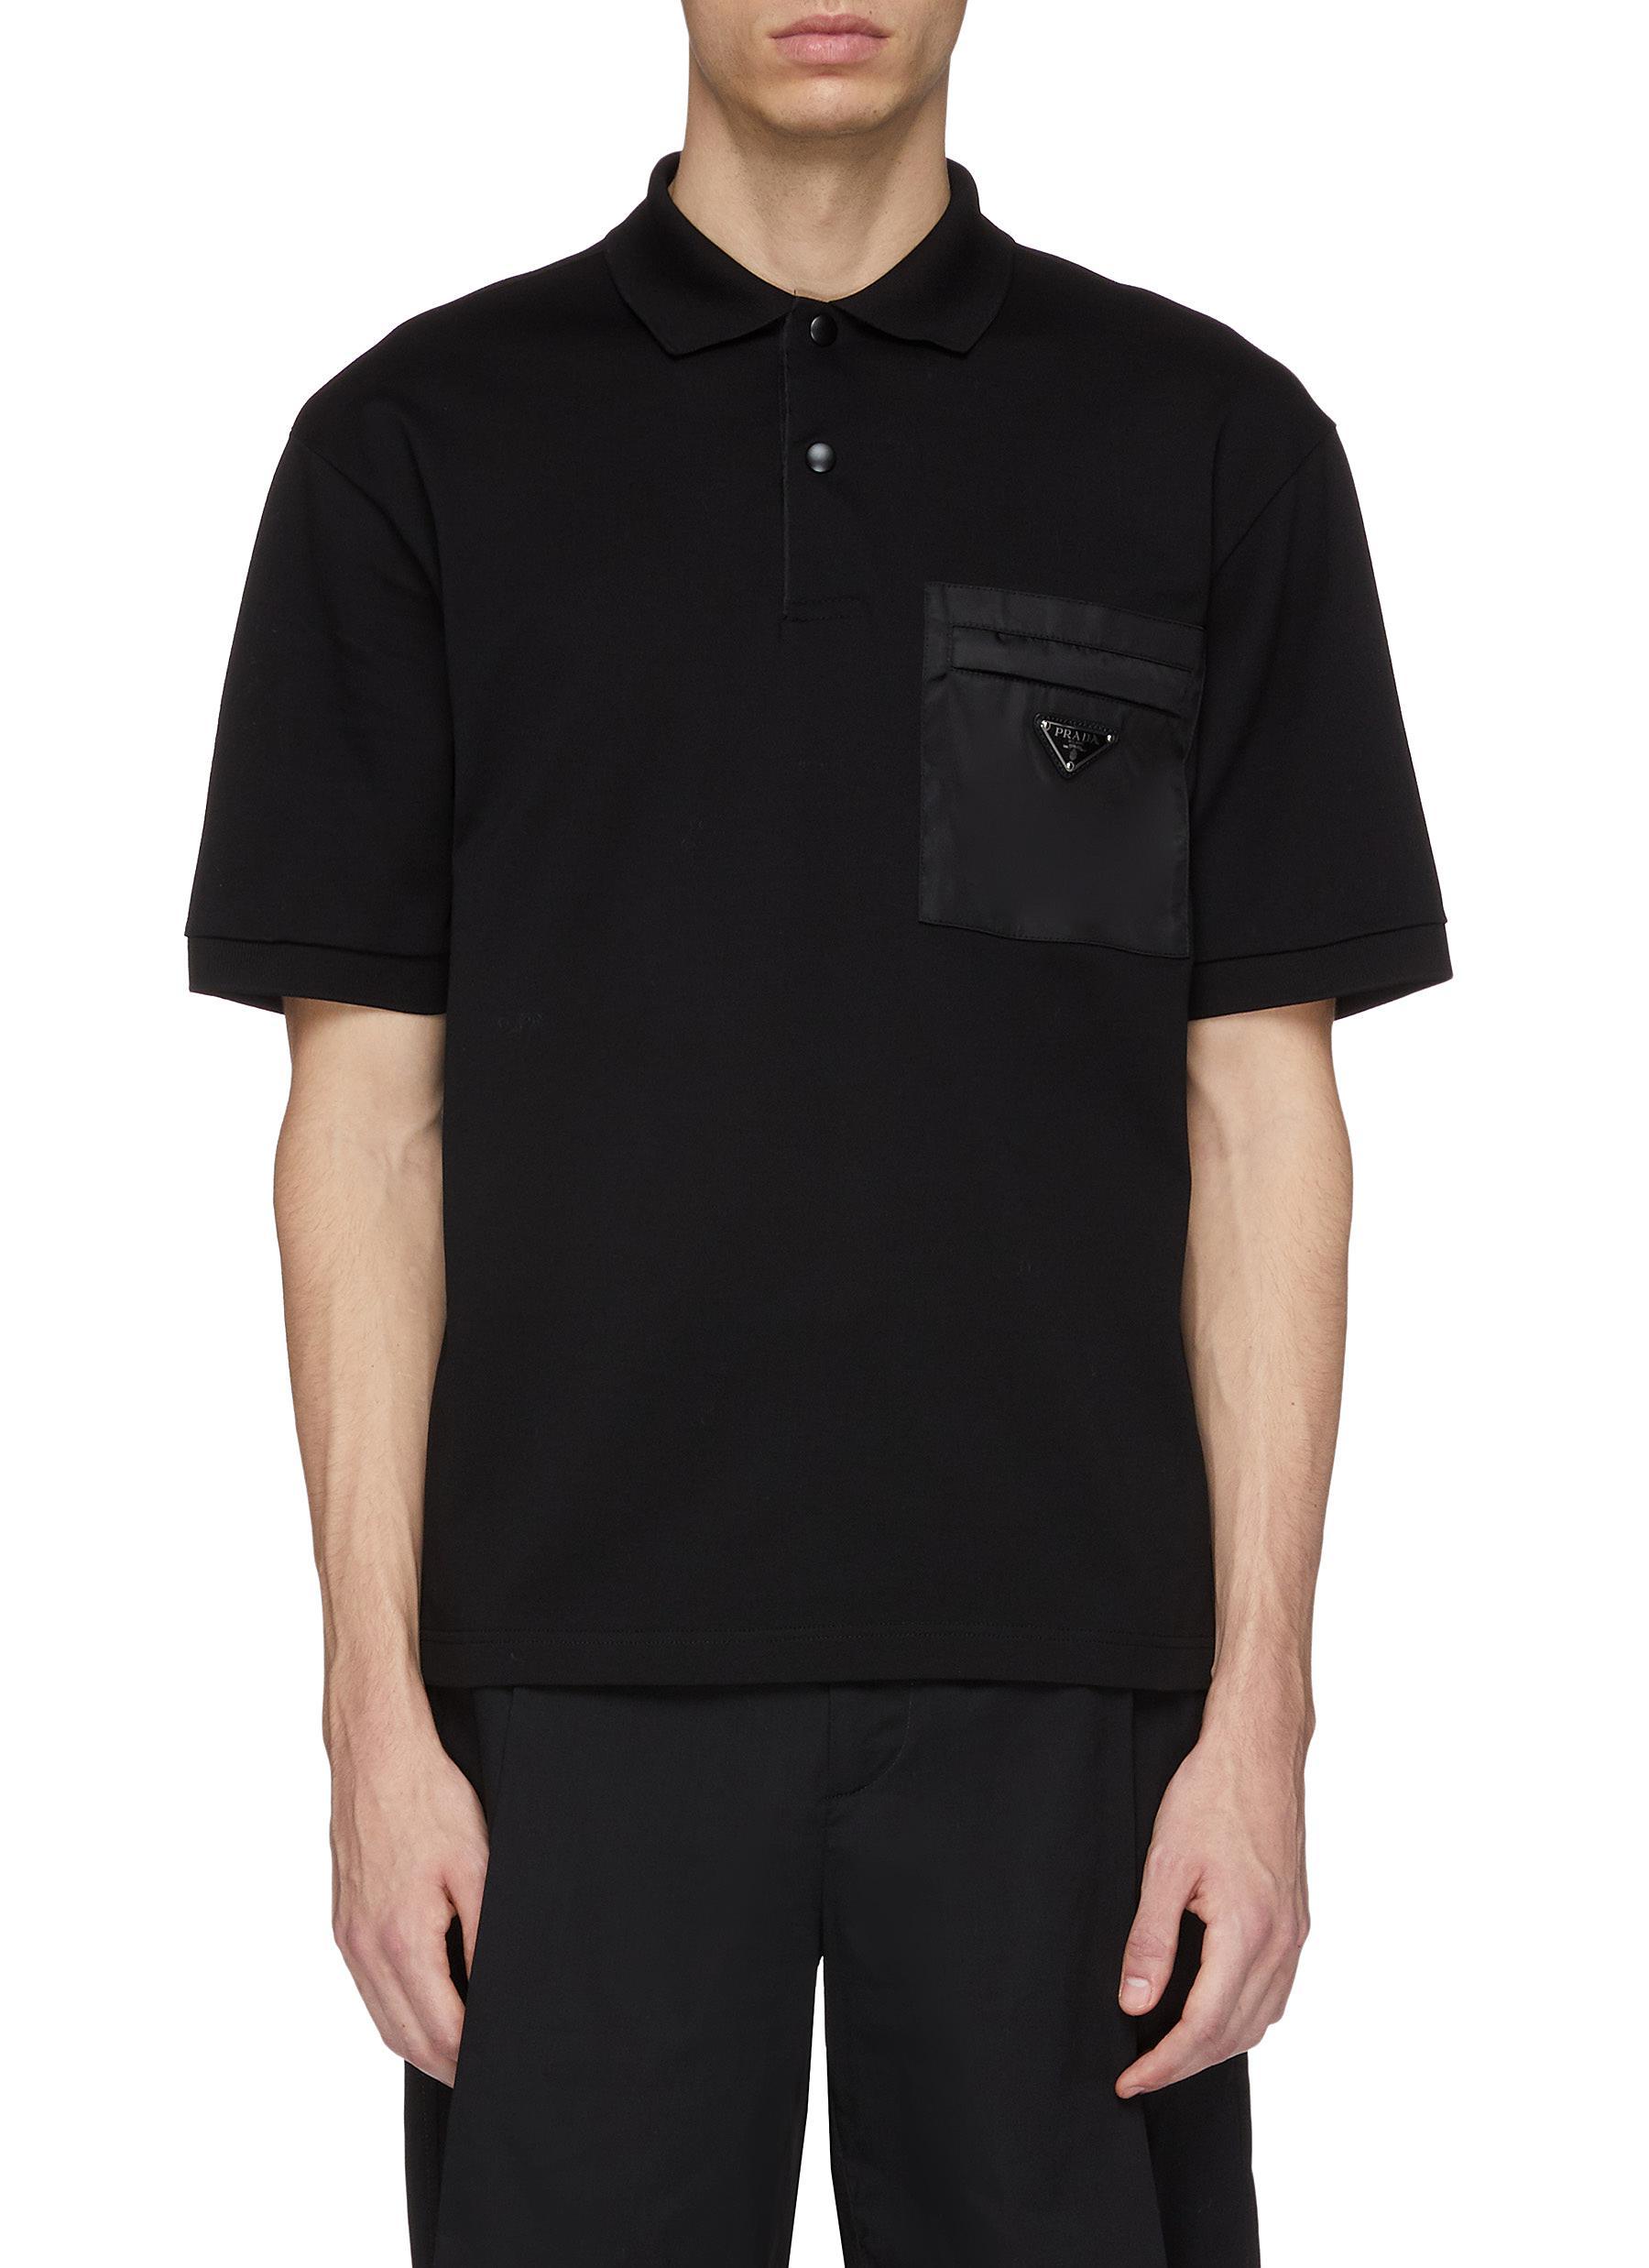 Prada Logo Plate Chest Pocket Polo Shirt in Black for Men - Lyst